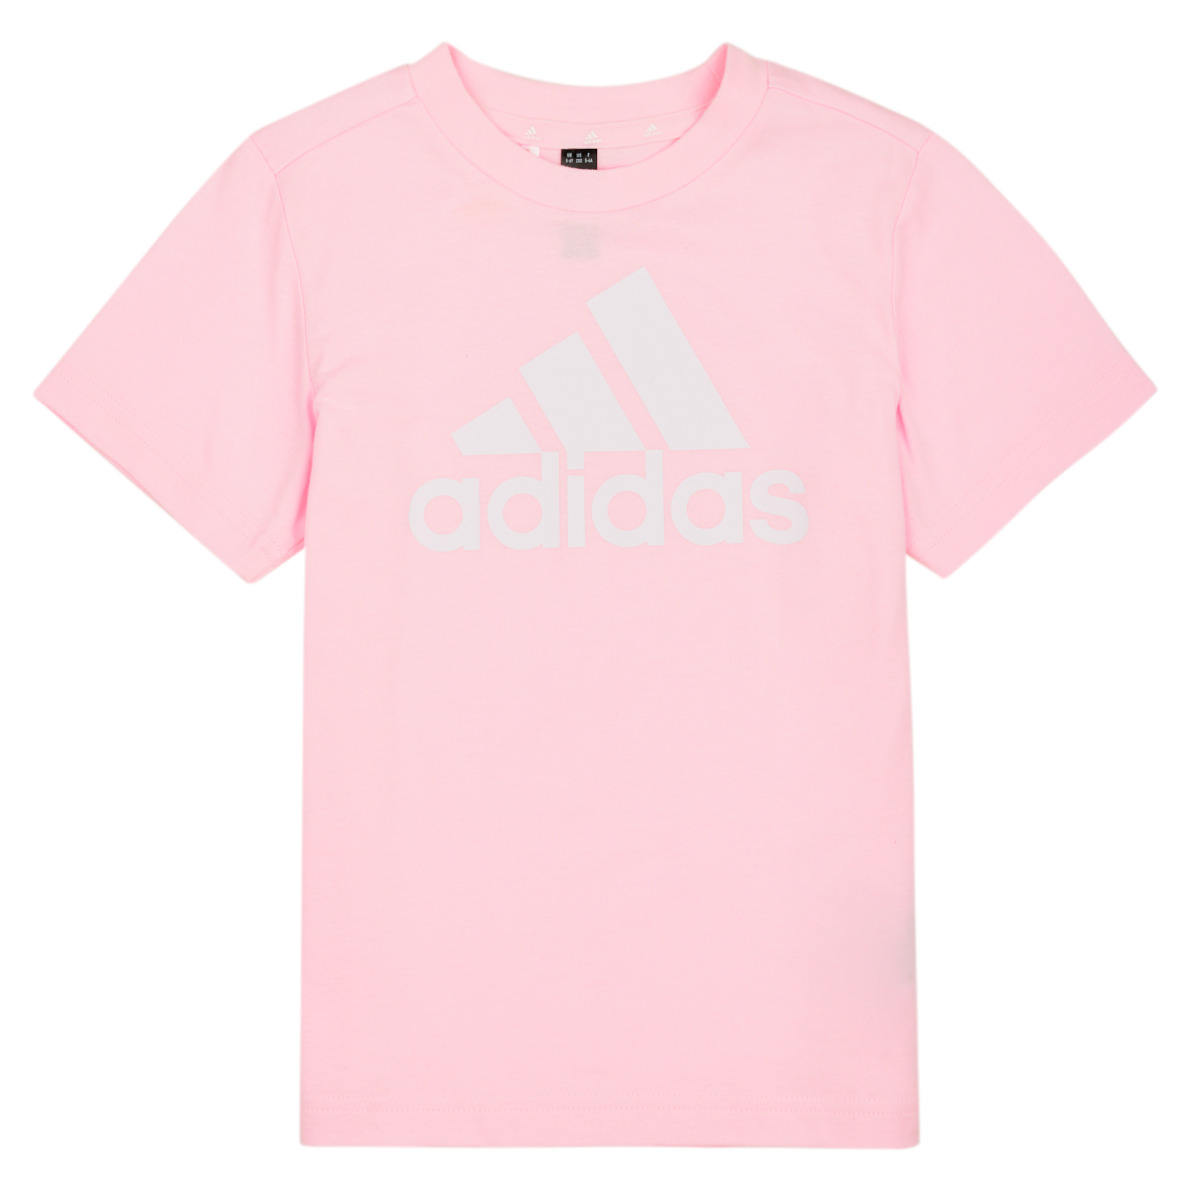 Adidas Sportswear Rose / Blanc LK BL CO TEE y9W2aAy9